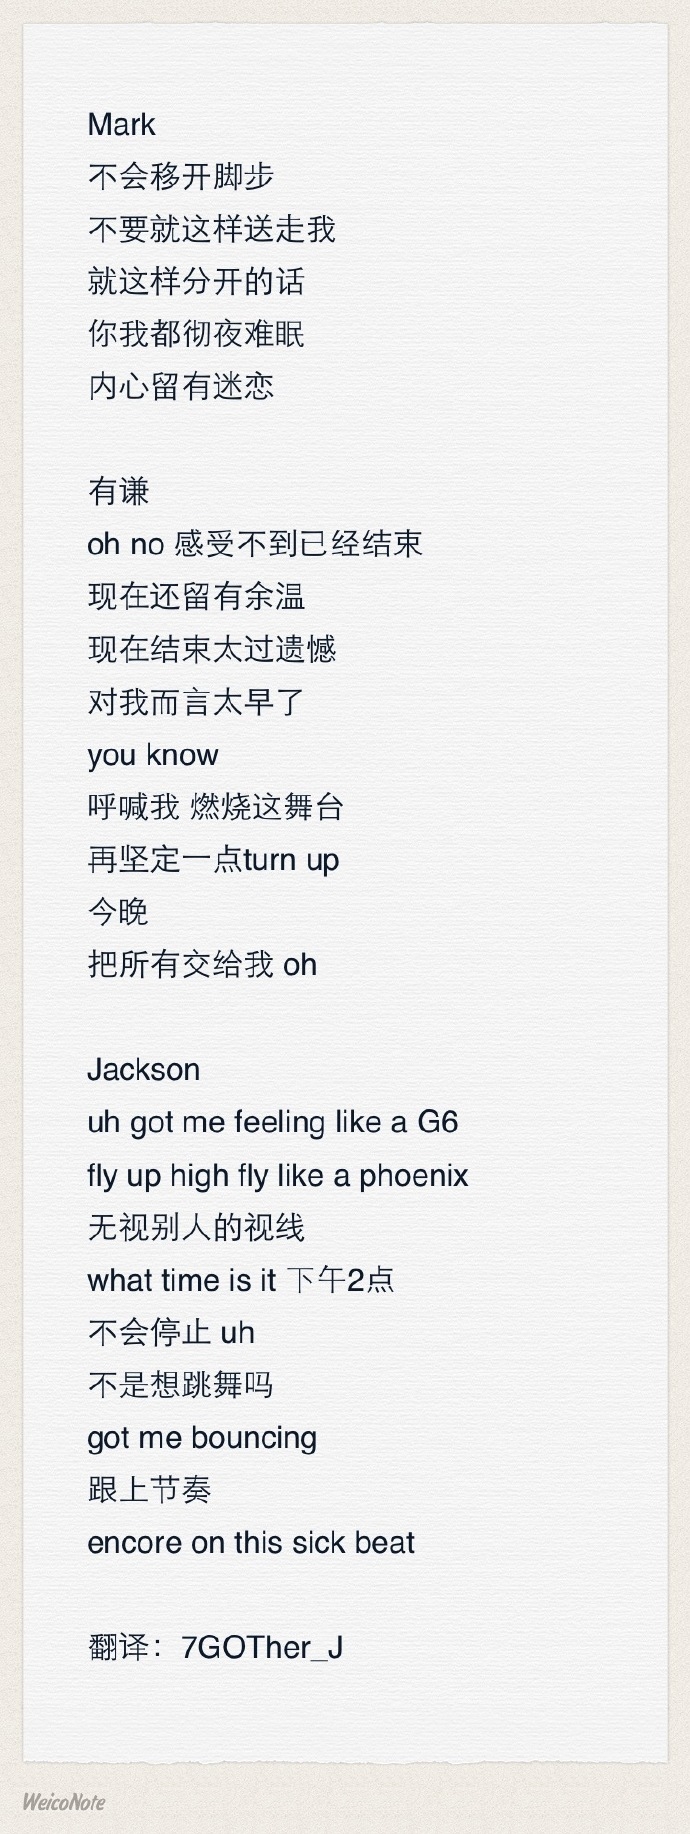 中文歌词翻译成外文(中文歌曲翻译成英文版的歌曲)